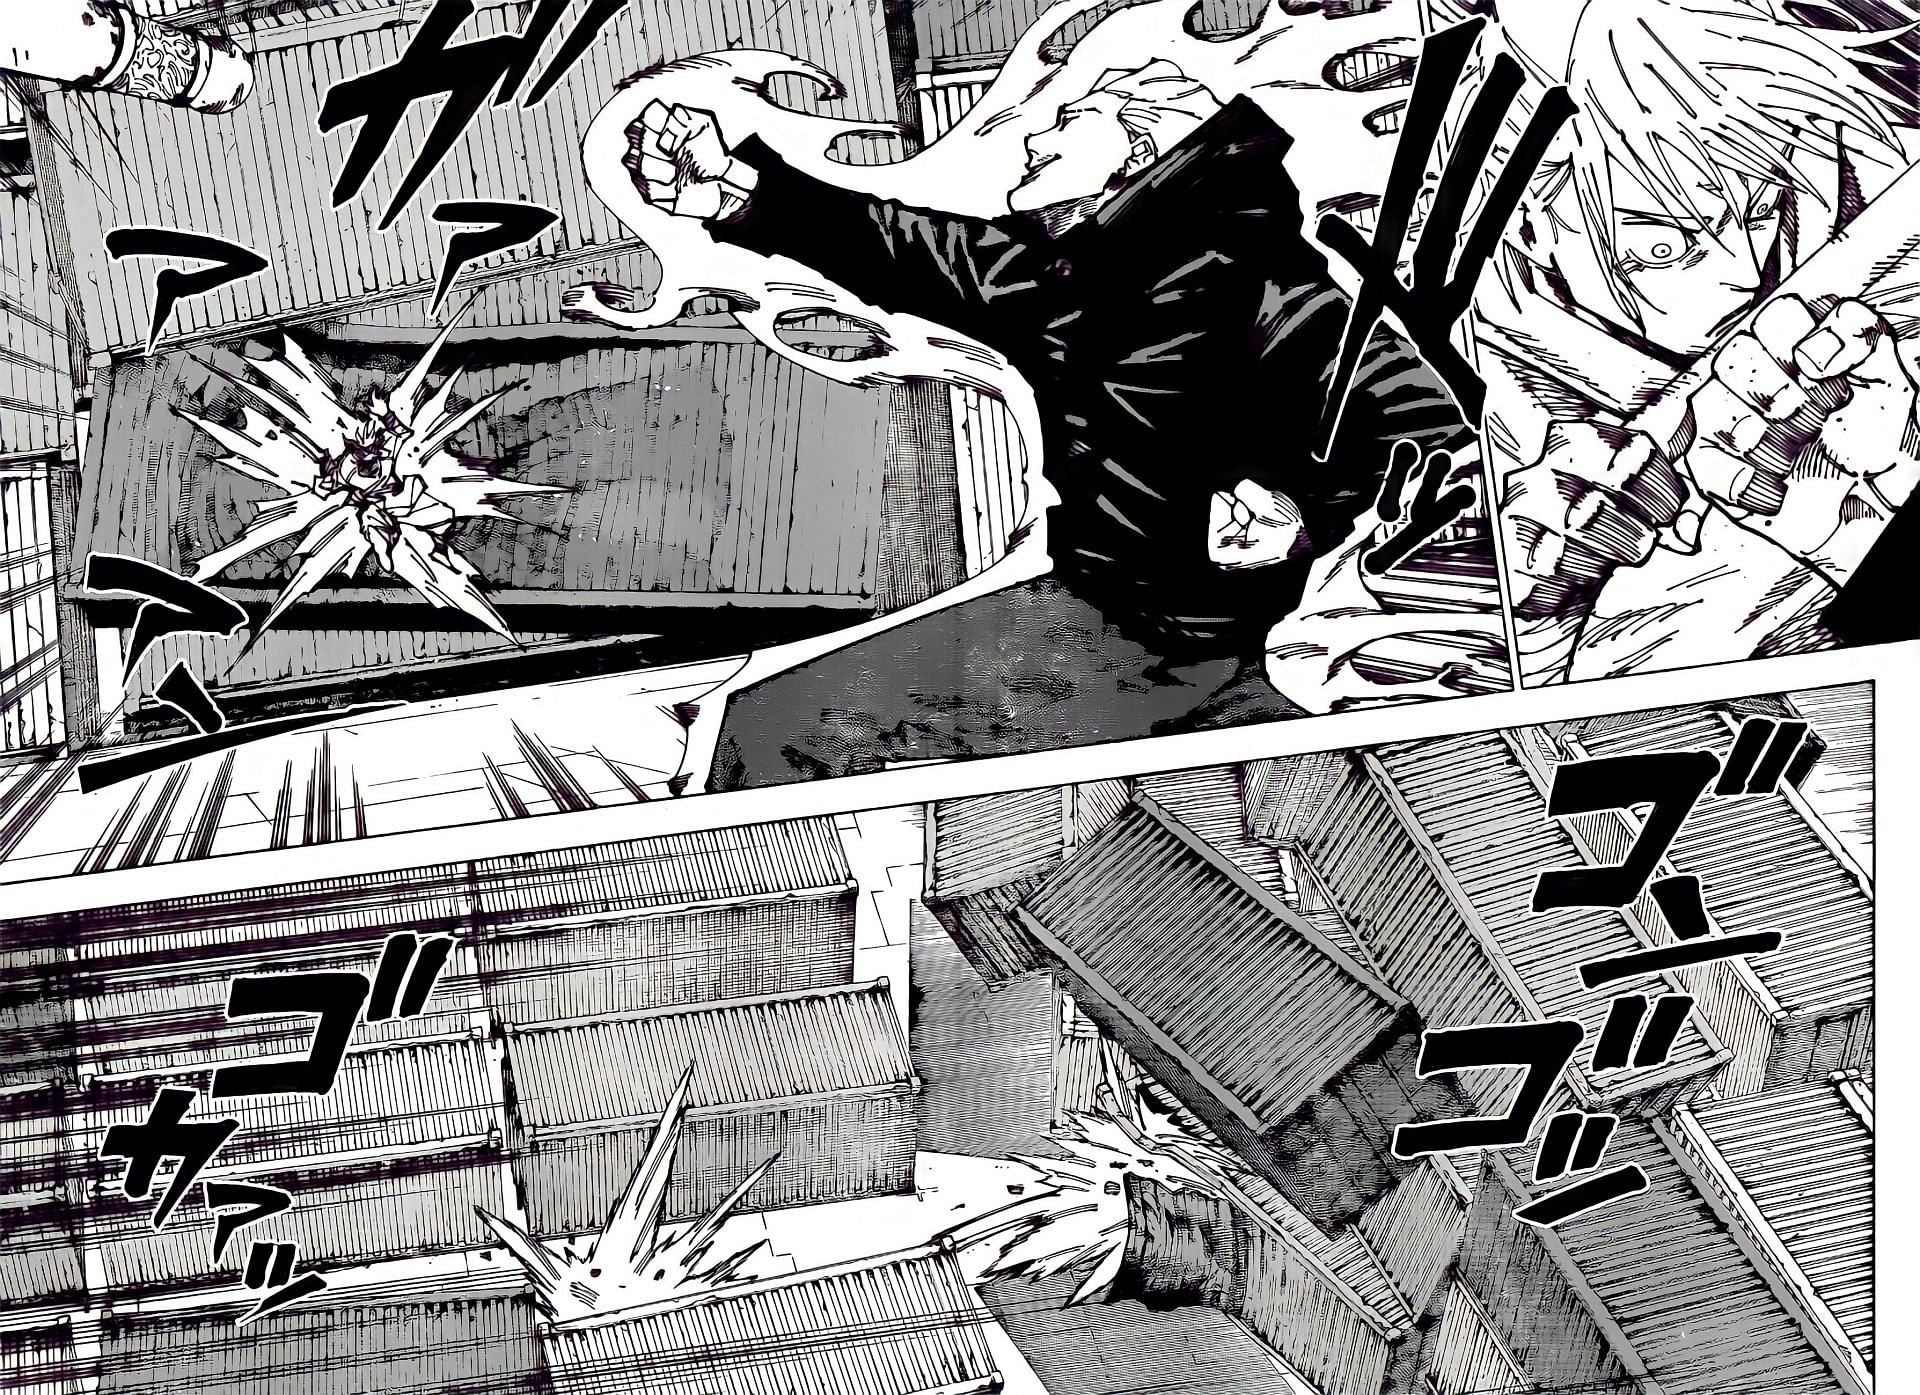 Hakari vs. Kashimo begins in chapter 186 (Image via Shueisha)